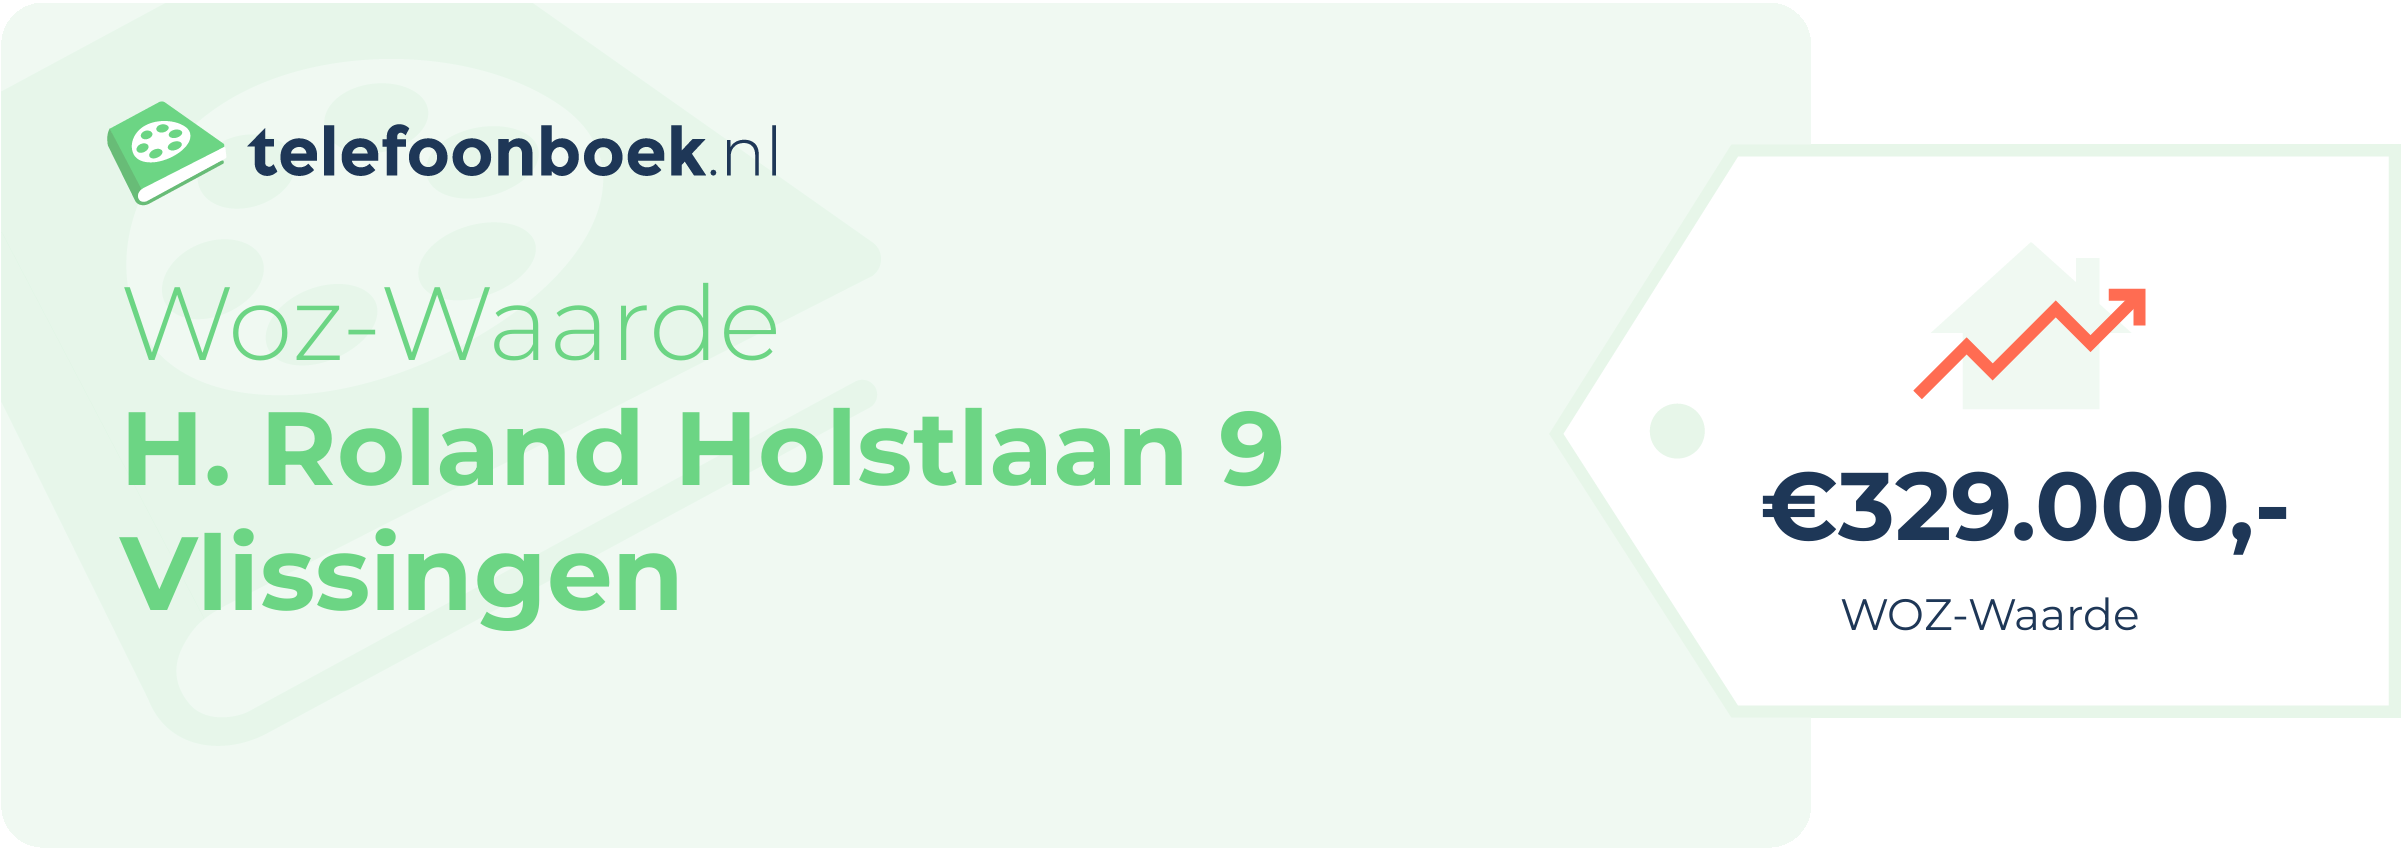 WOZ-waarde H. Roland Holstlaan 9 Vlissingen